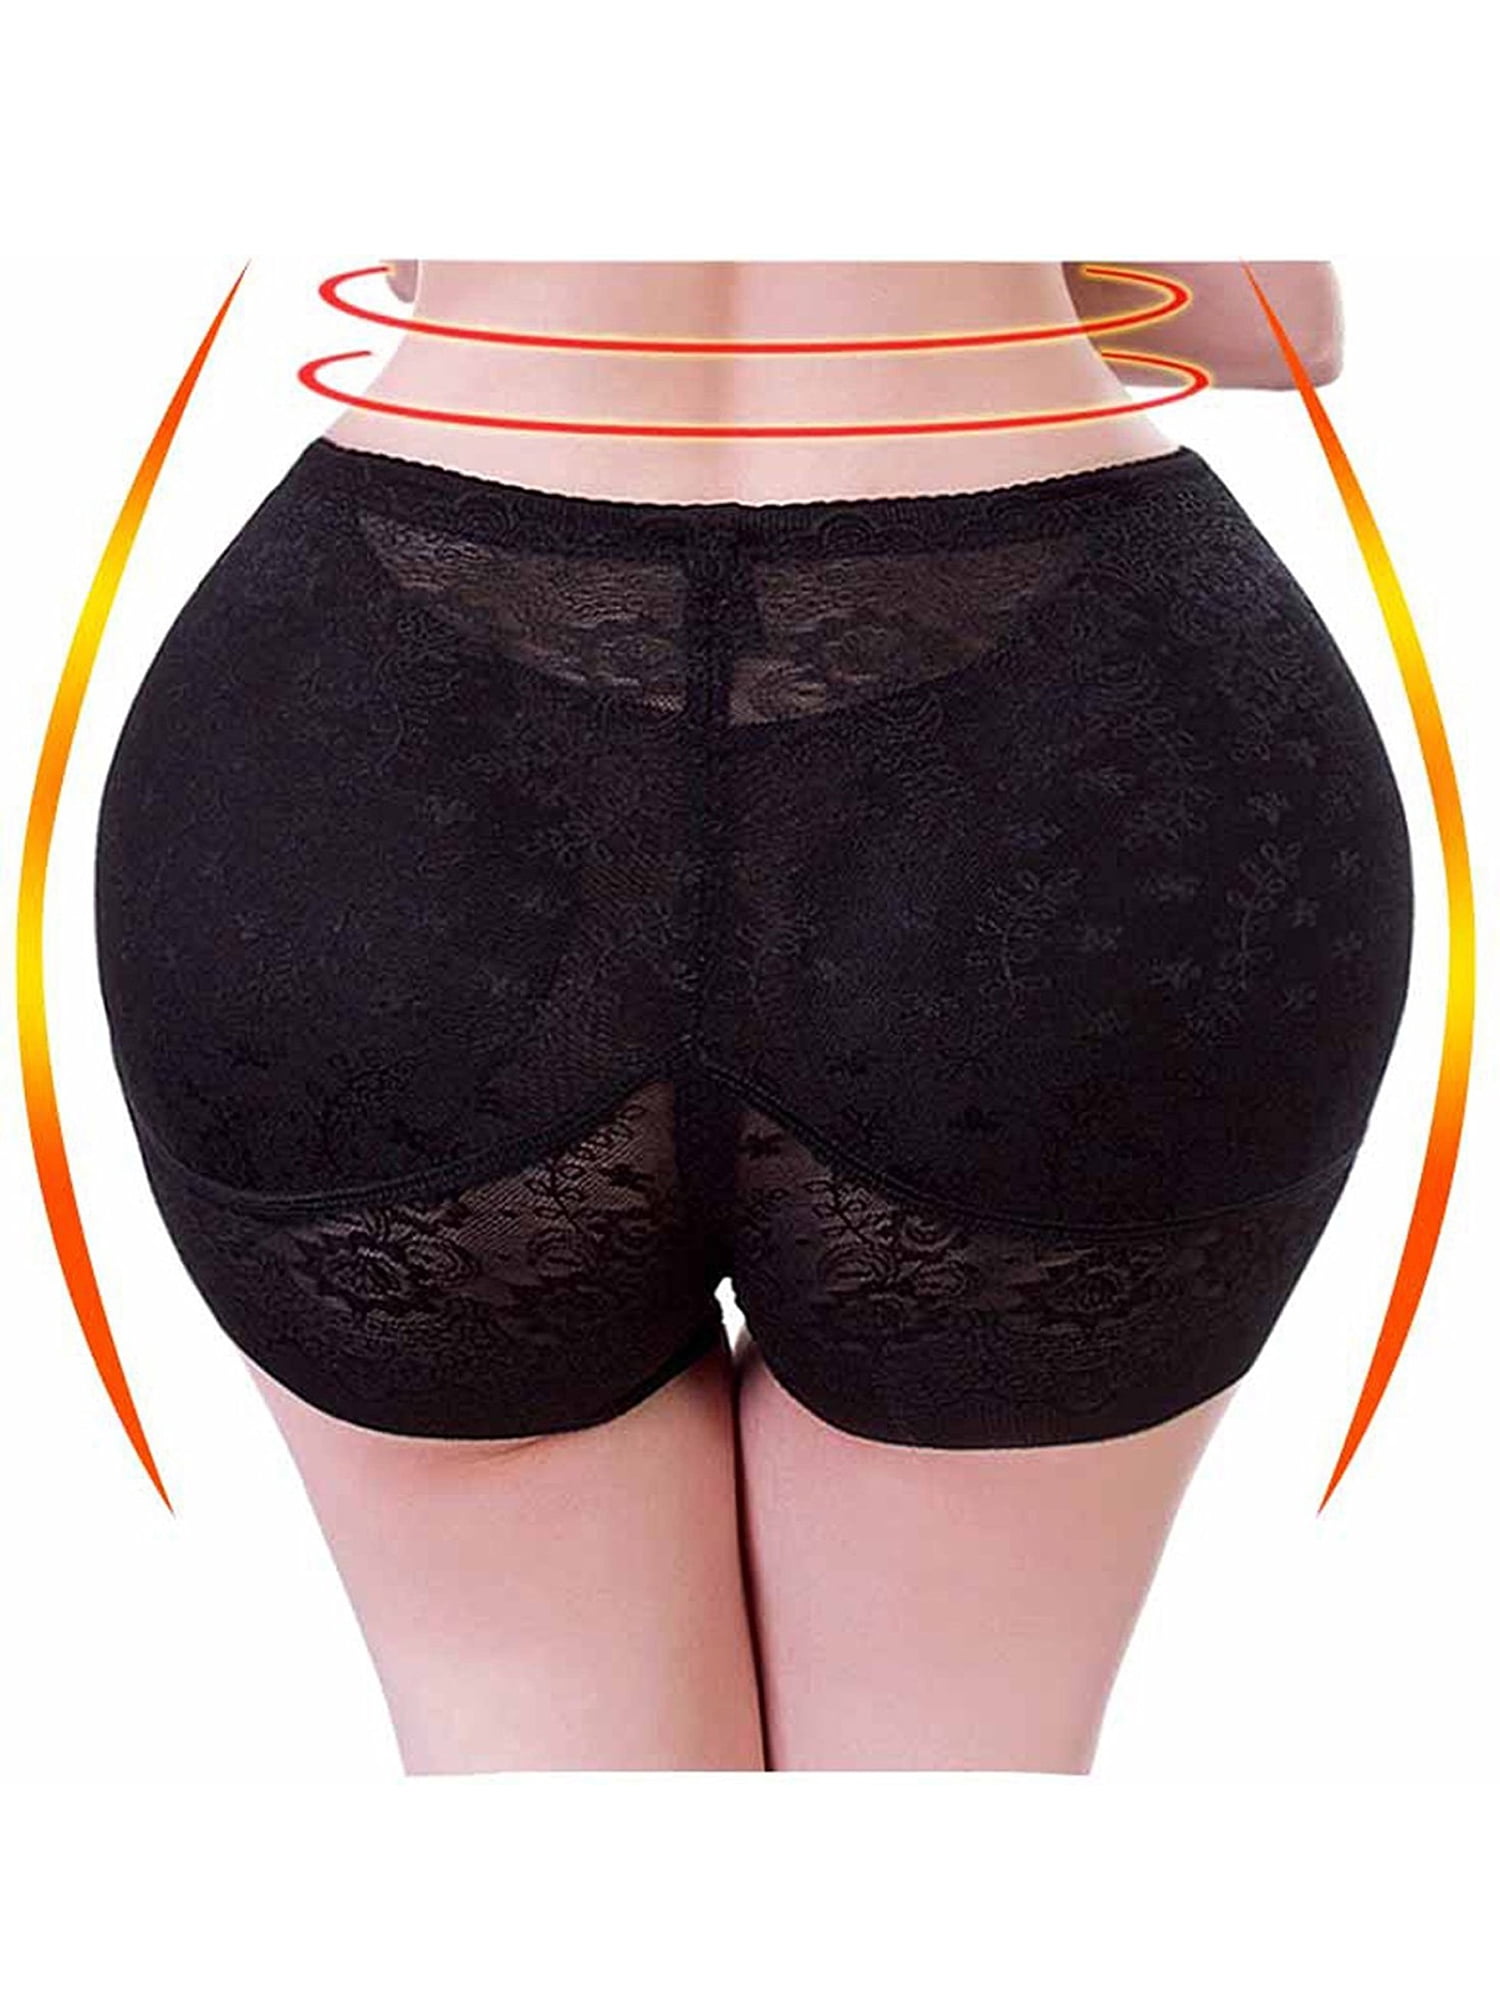 SAYFUT Women's Padded Seamless Butt Lifter Panties Shaper Extra